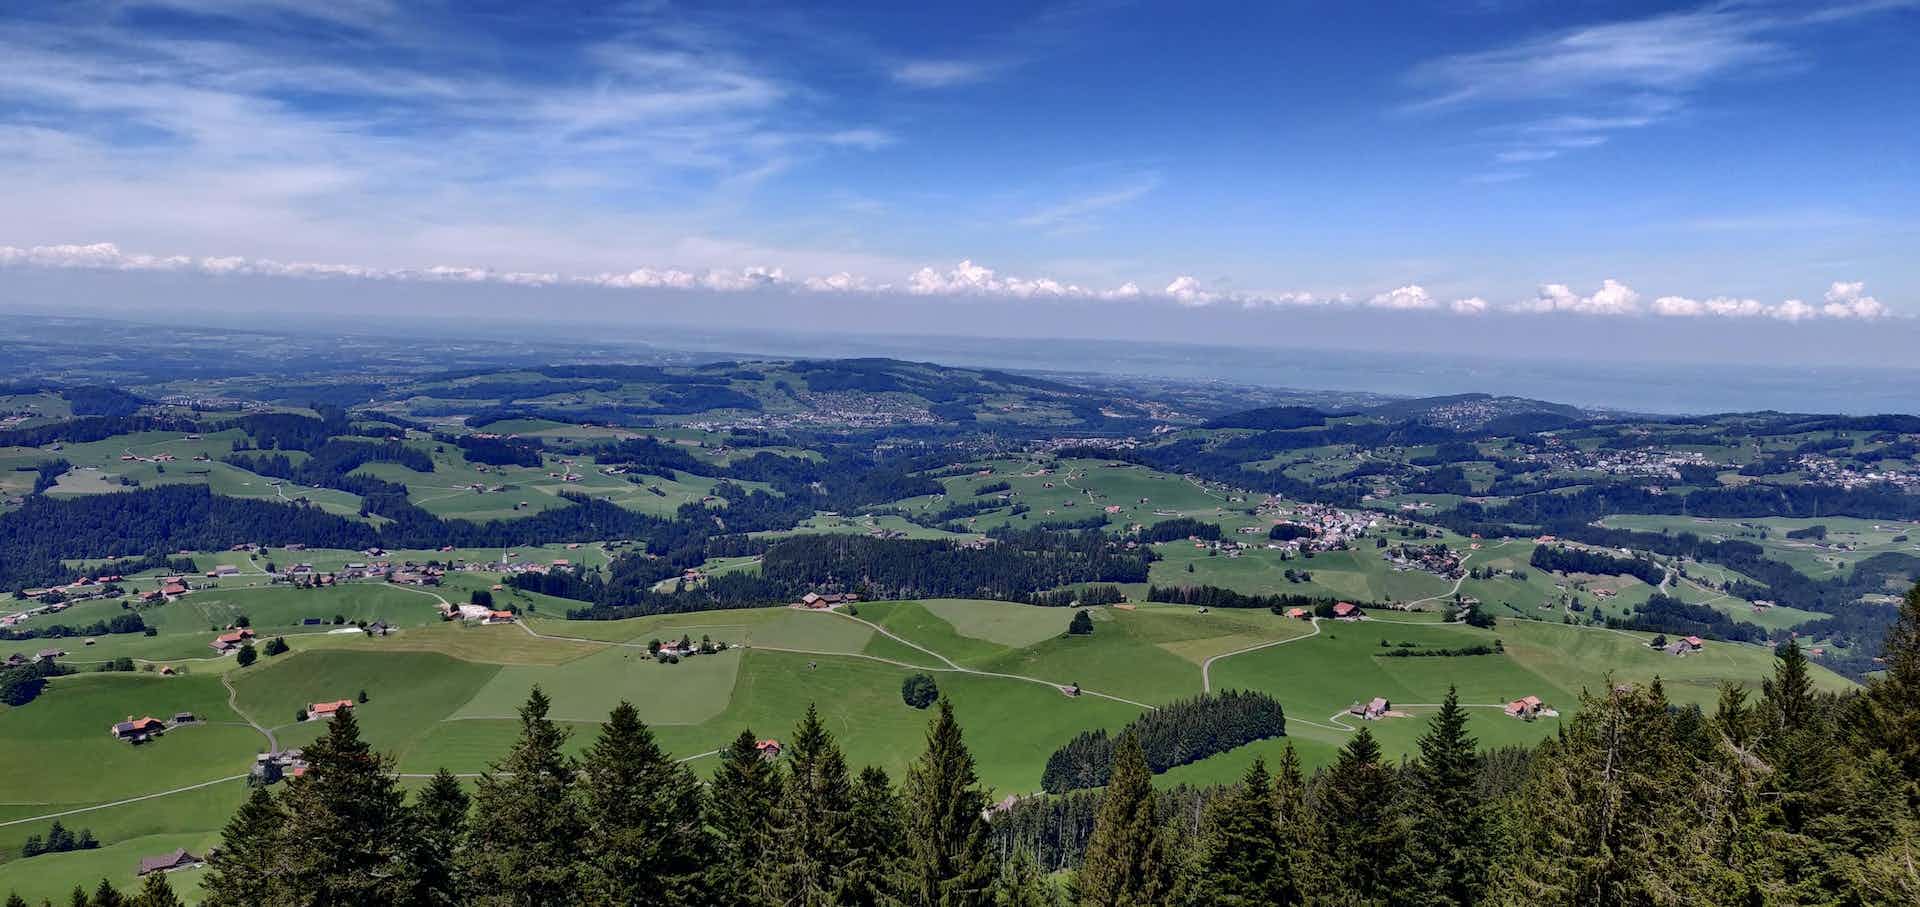 Himmelberg 4, Produzent in Gontenbad Kanton Appenzell Rhodos Int. in der Schweiz